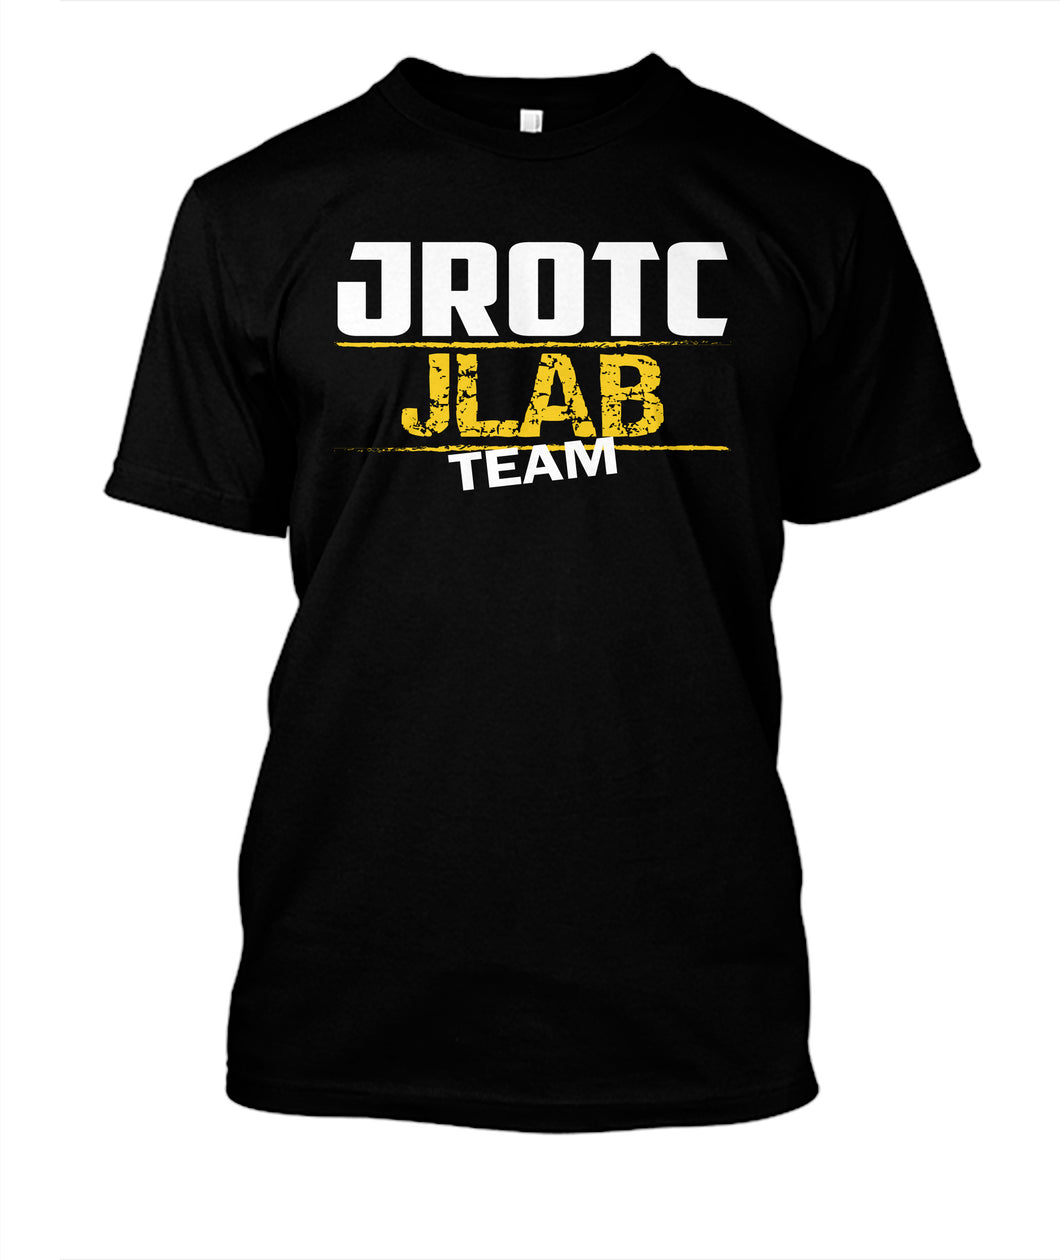 JROTC JLAB Team